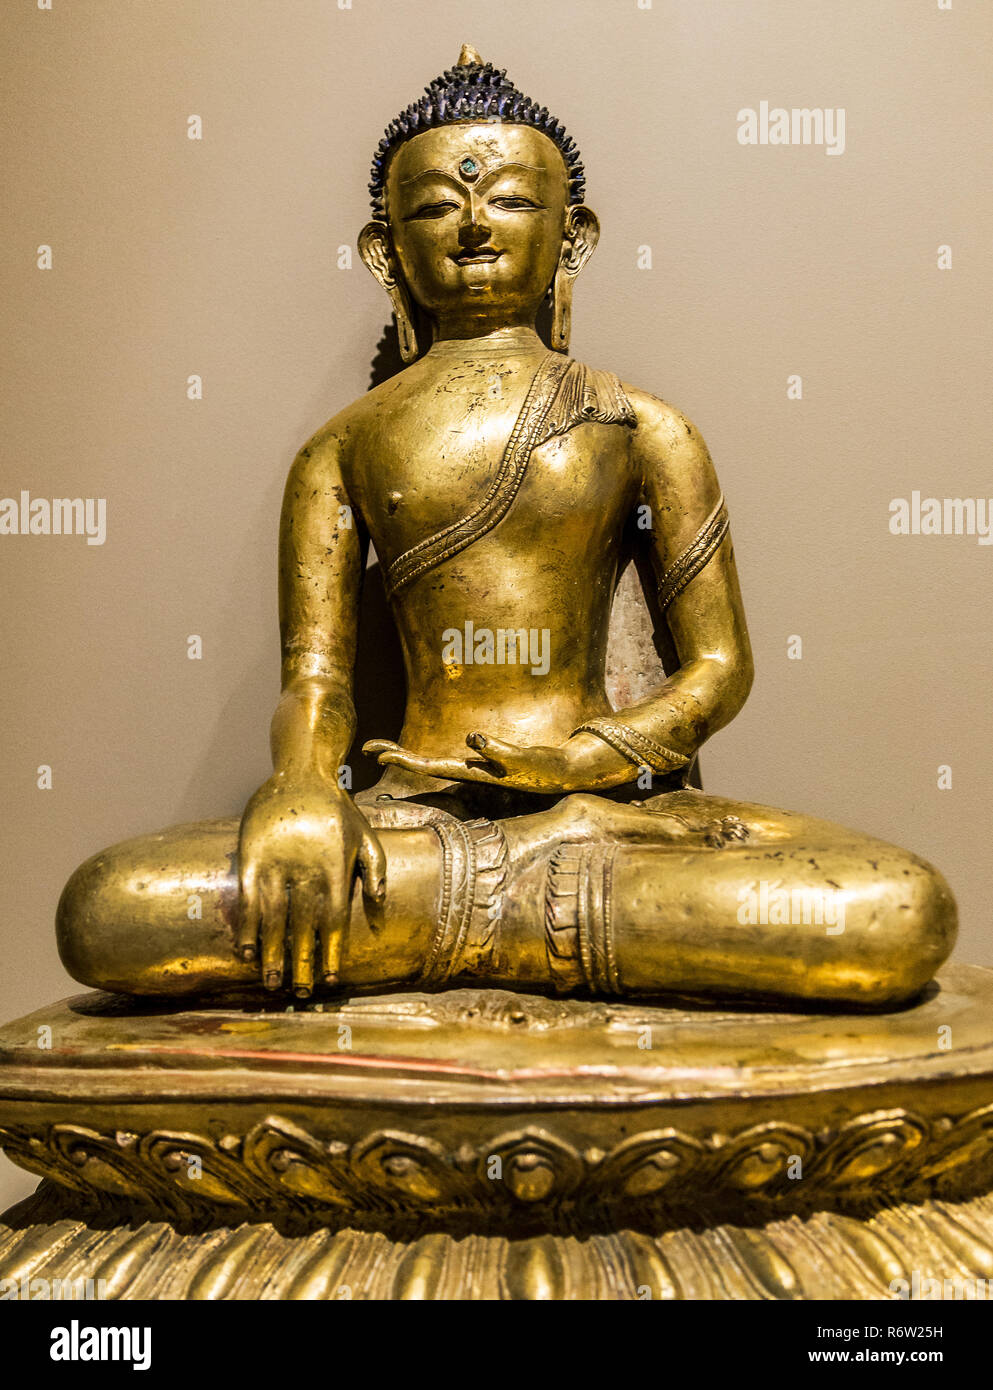 Un tibetano statua in bronzo del Buddha Shakyamuni circa del XIII-XIV secolo è visualizzato a Michael C. Carlos Museum alla Emory University di Atlanta. Foto Stock